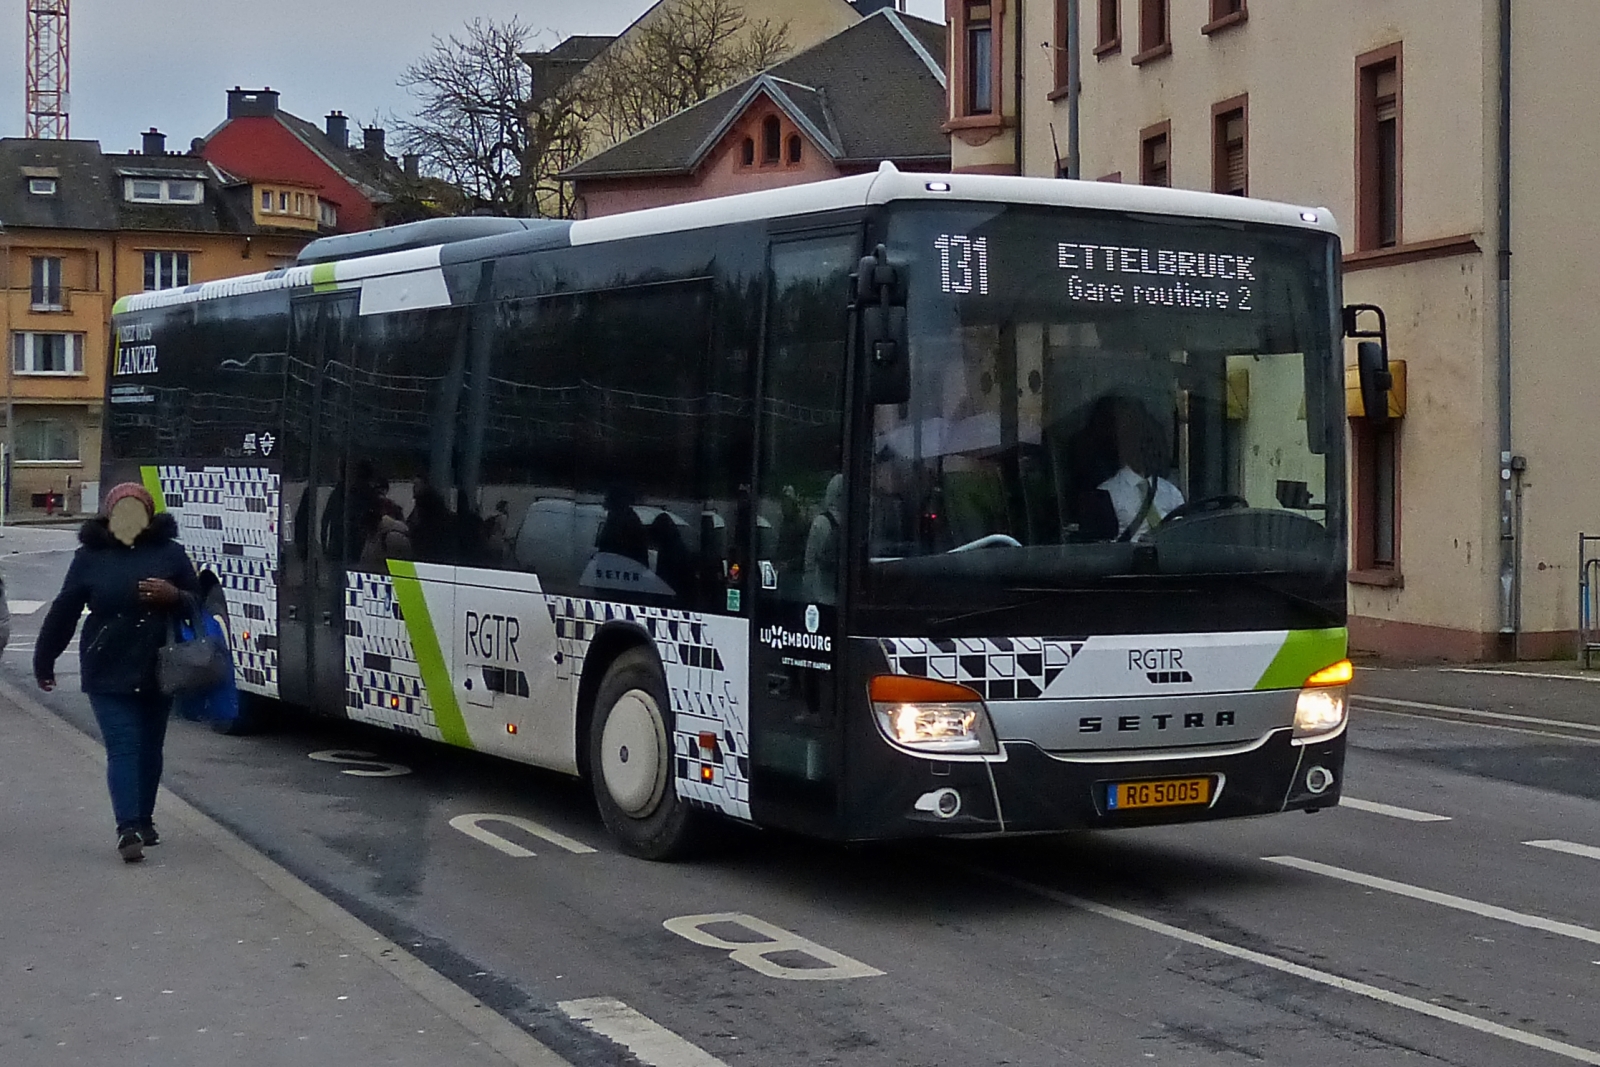 RG 5005, Setra S 416 LE, von Sales Lentz, hat die fahrgäste am Bahnhof in Ettelbrück aussteigen lassen und macht sich auf den Heimweg in die Abstellung. 01.2023